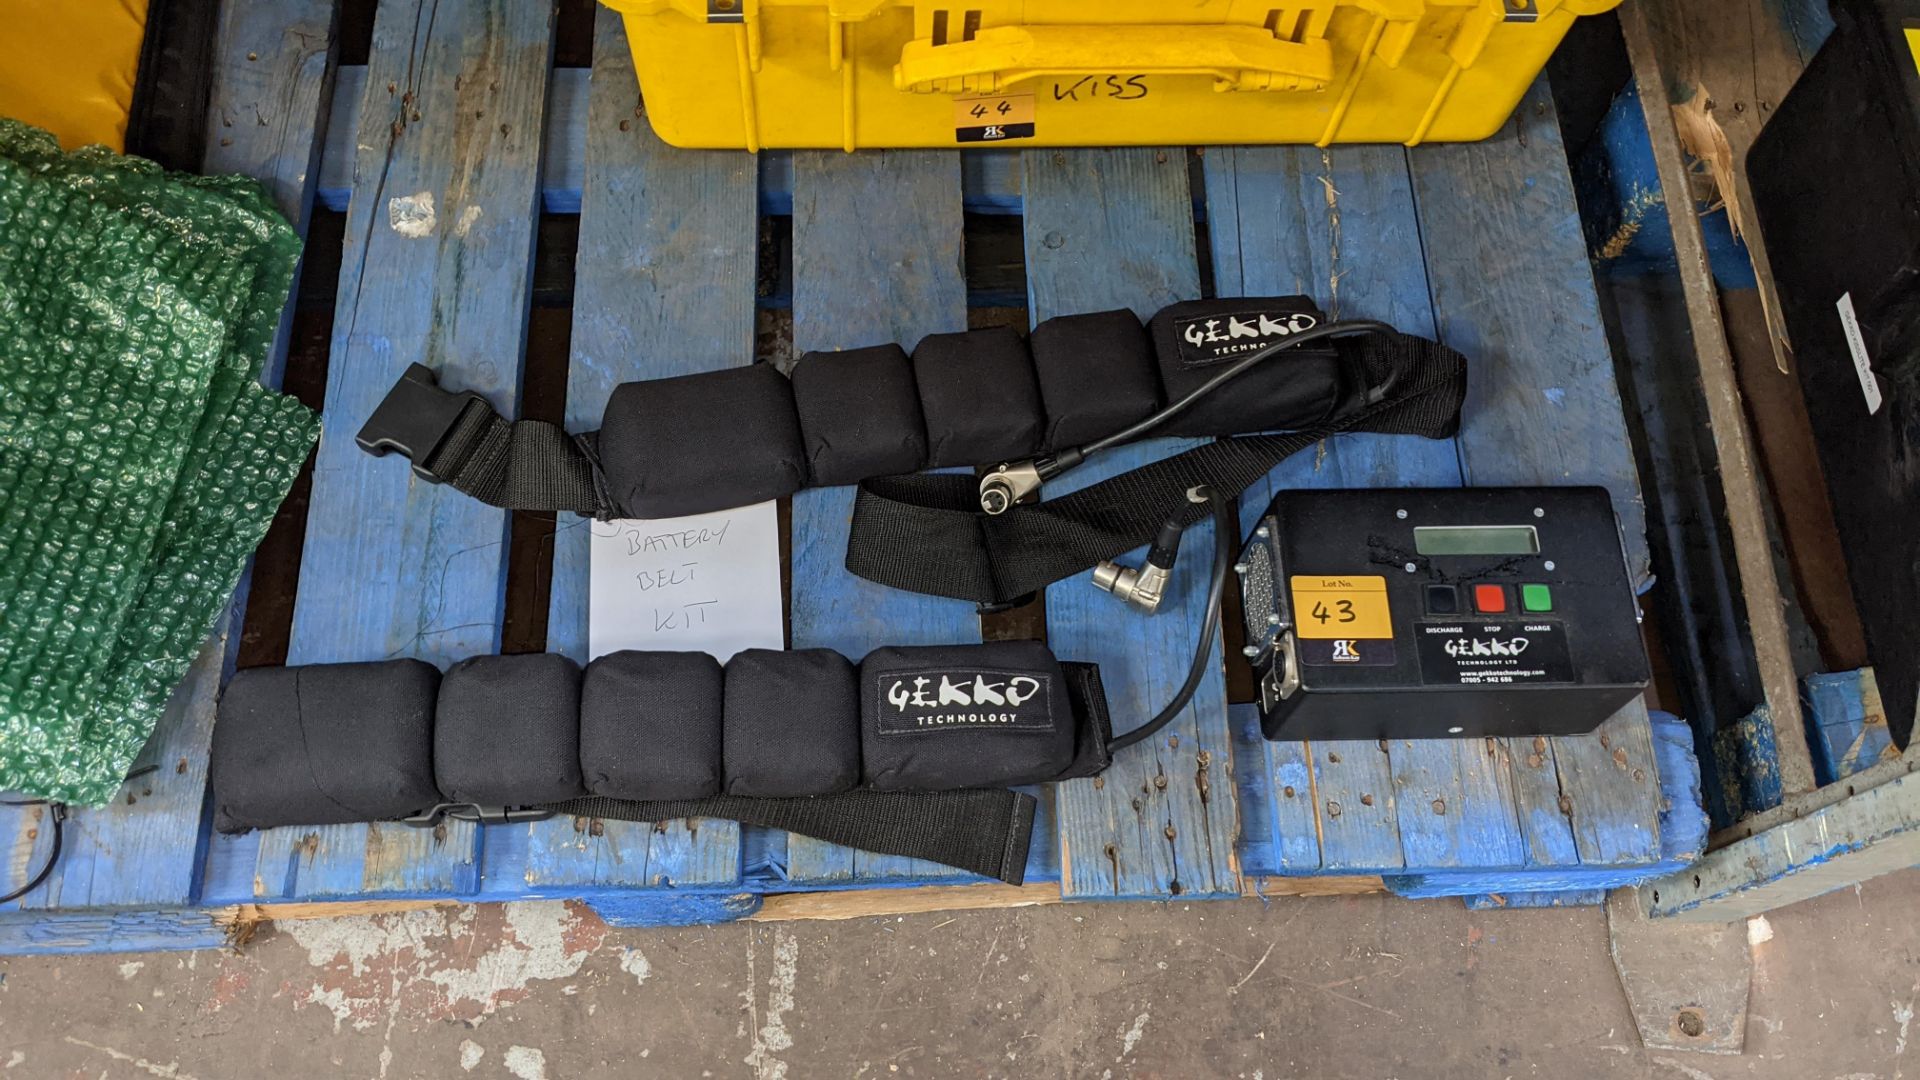 Gekko battery belt kit comprising 2 off belts & 1 off charger